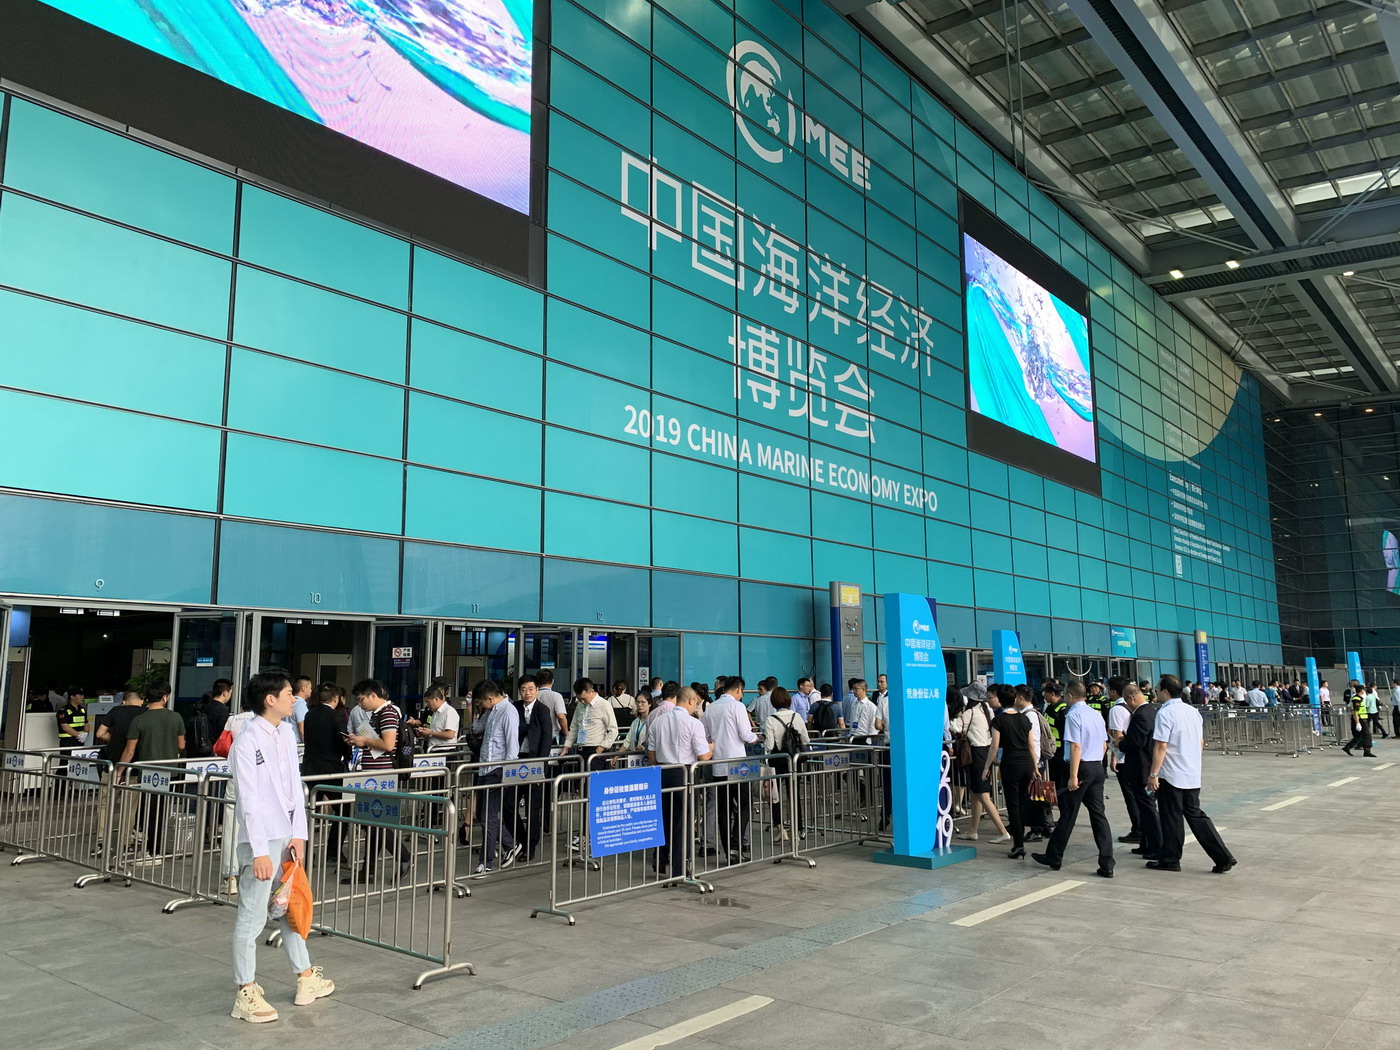 深圳海博会将于10月在深开幕，主题为“海洋发展史” 展会新闻 第3张